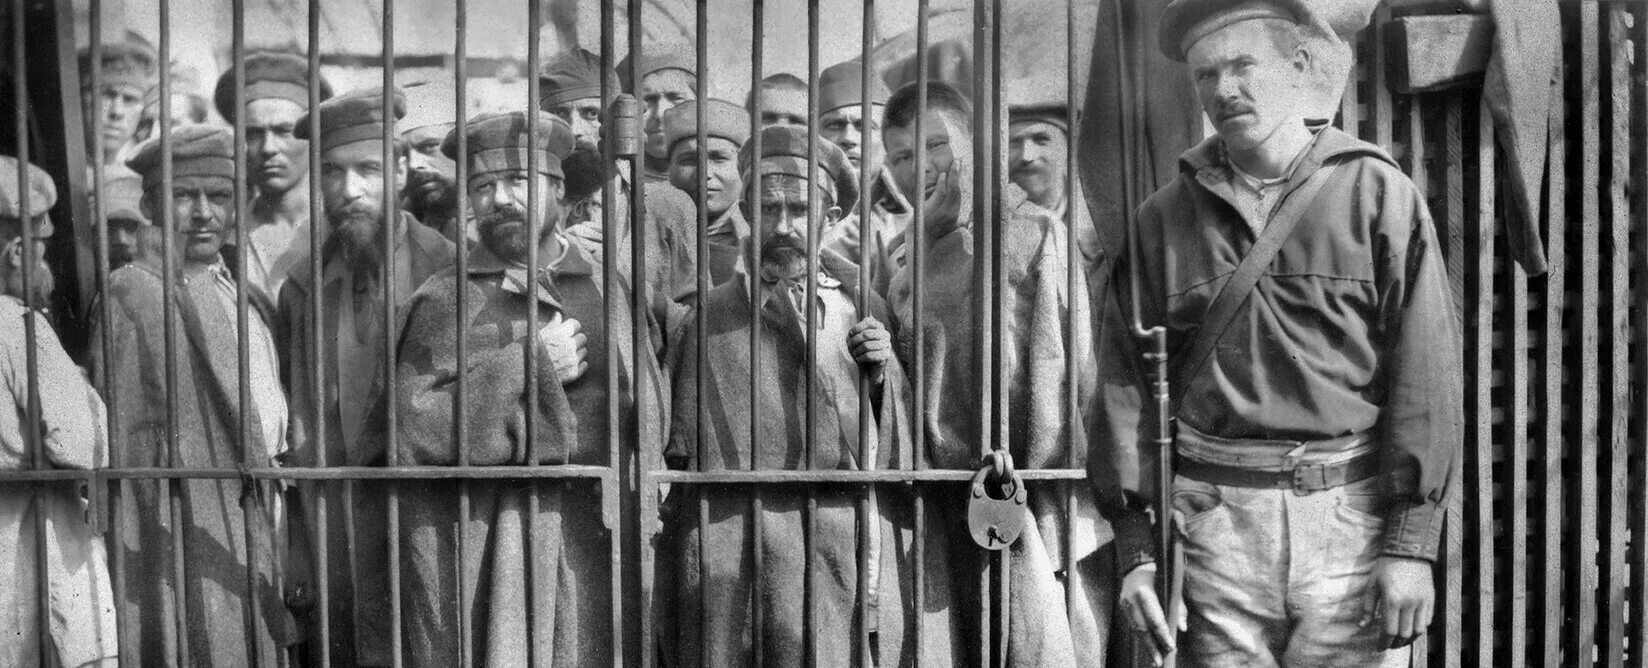 Писатели осужденные на каторжные работы. Сахалин каторга фото 19 век. Заключённые на каторге.